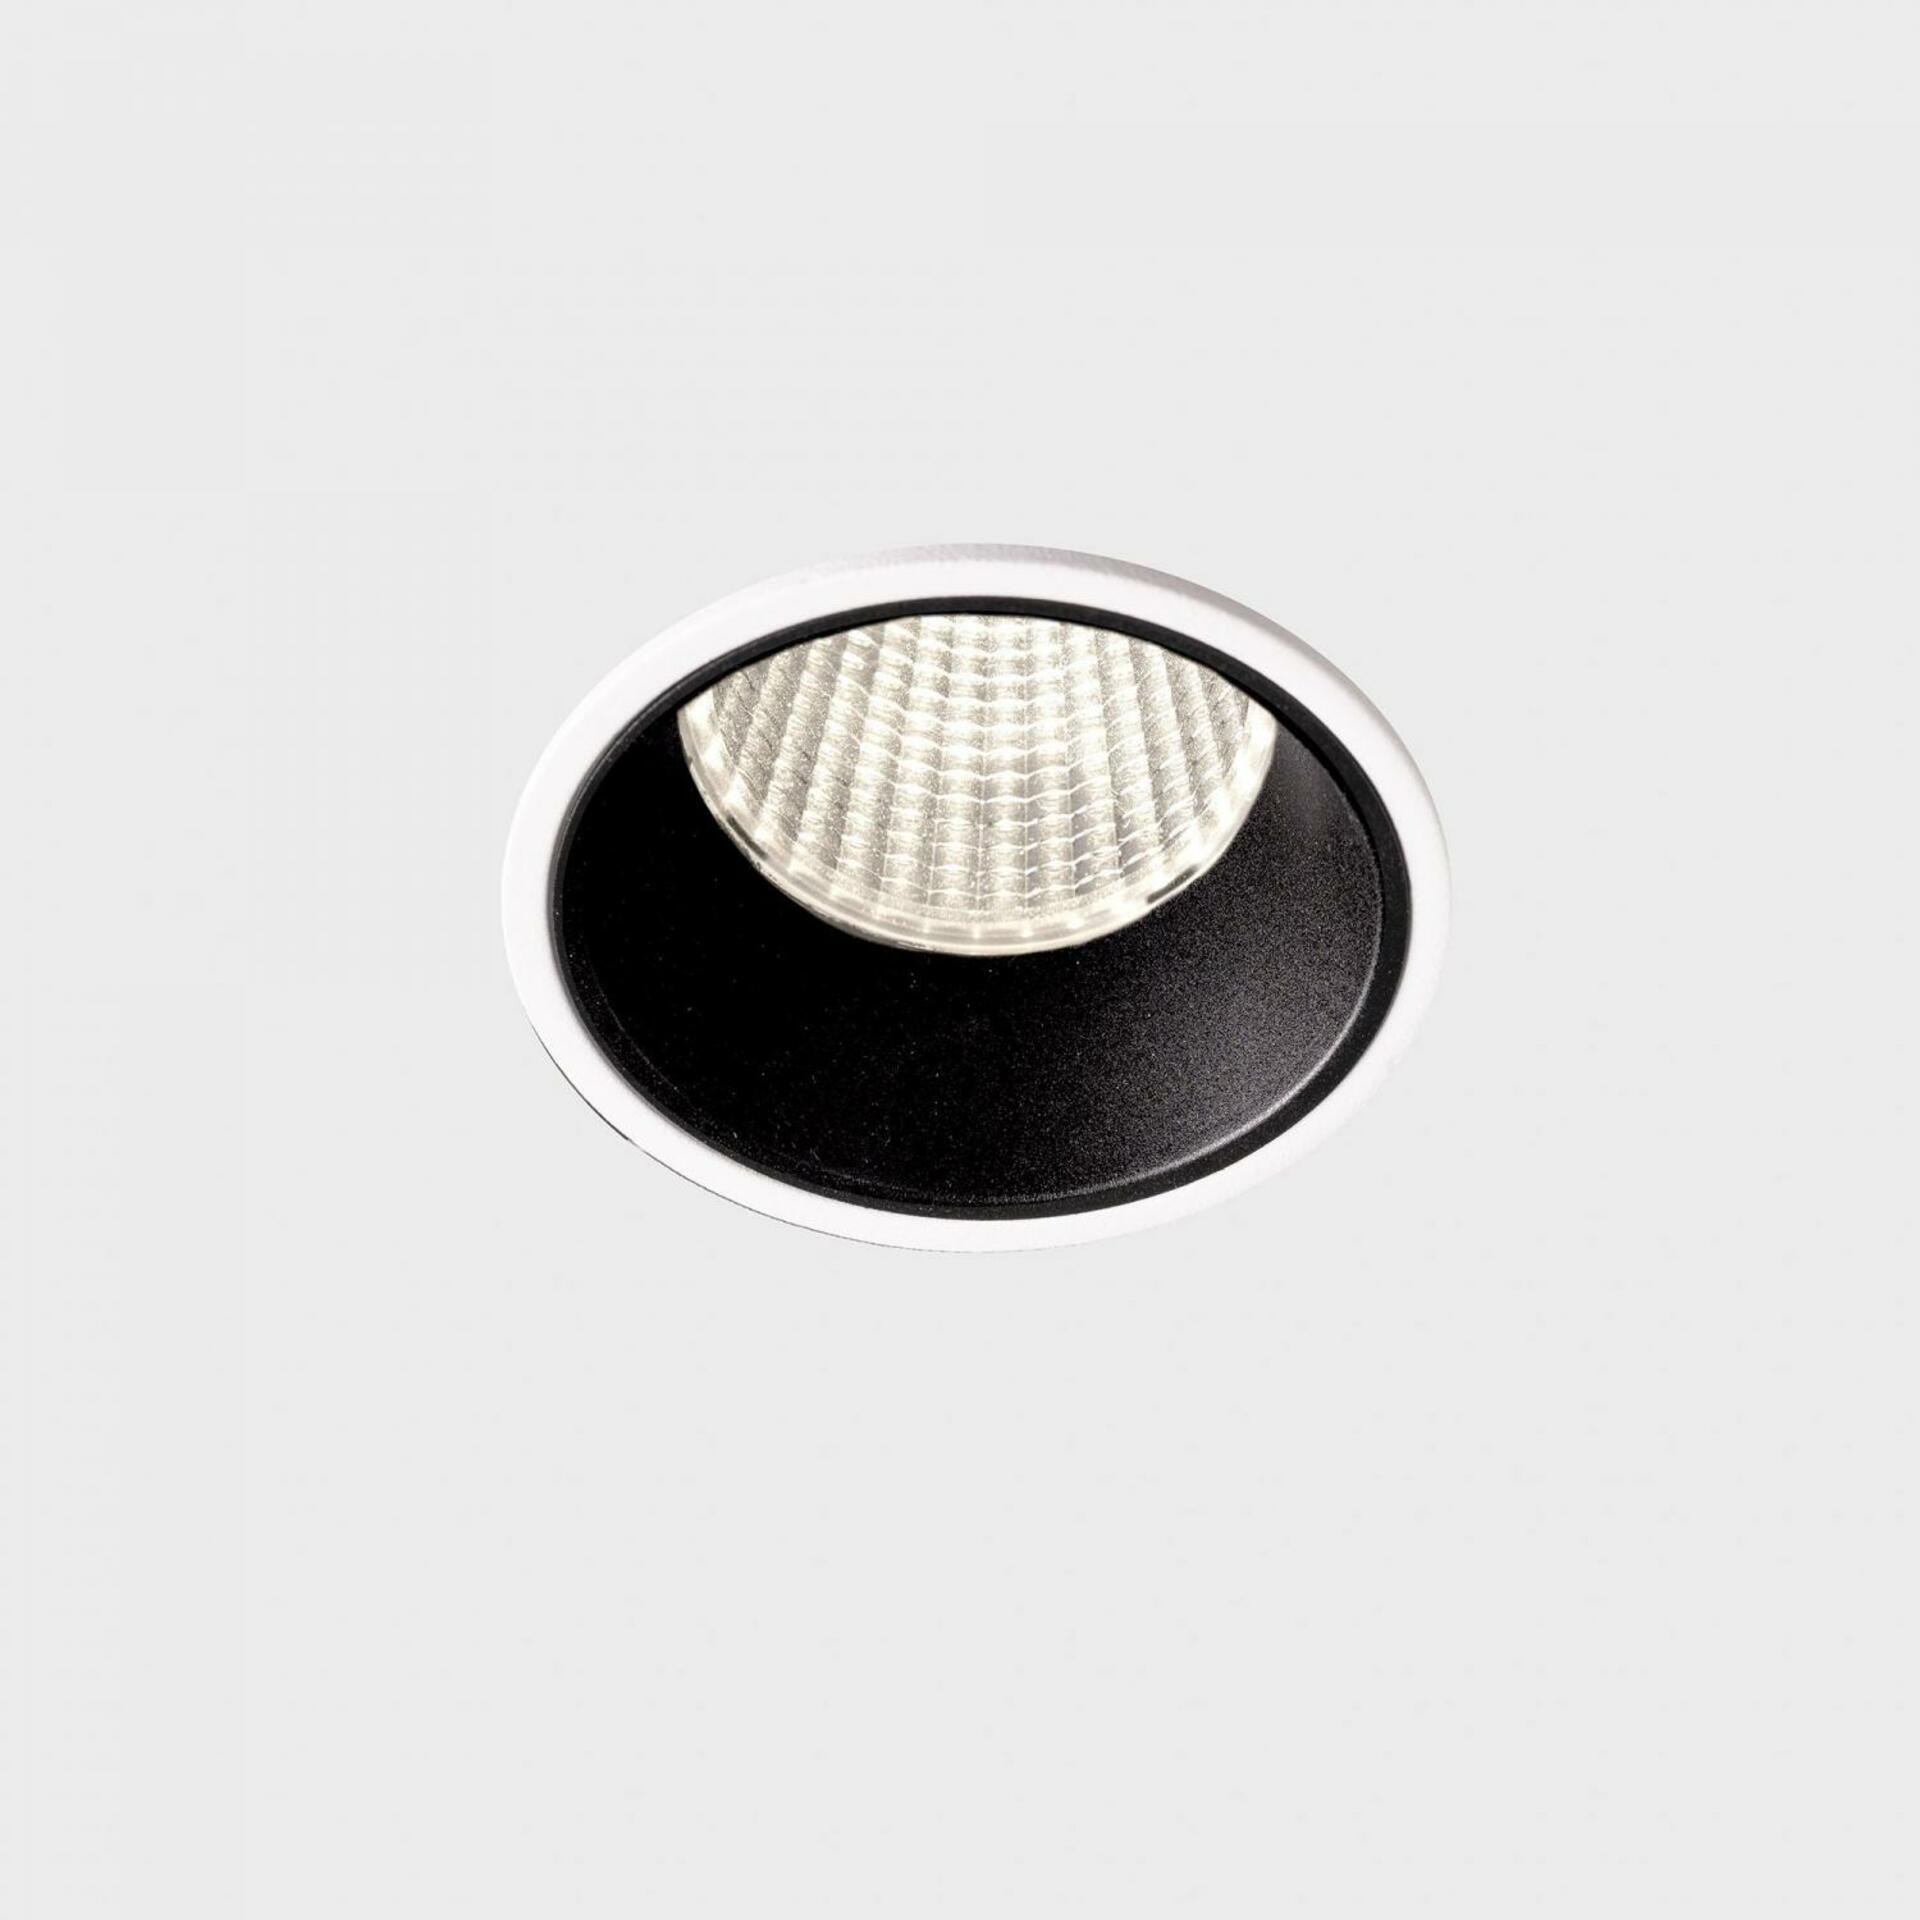 KOHL LIGHTING KOHL-Lighting VERSUS zapuštěné svítidlo s rámečkem pr. 60 mm bílá-černá 38° 5 W CRI 80 3000K PHASE CUT